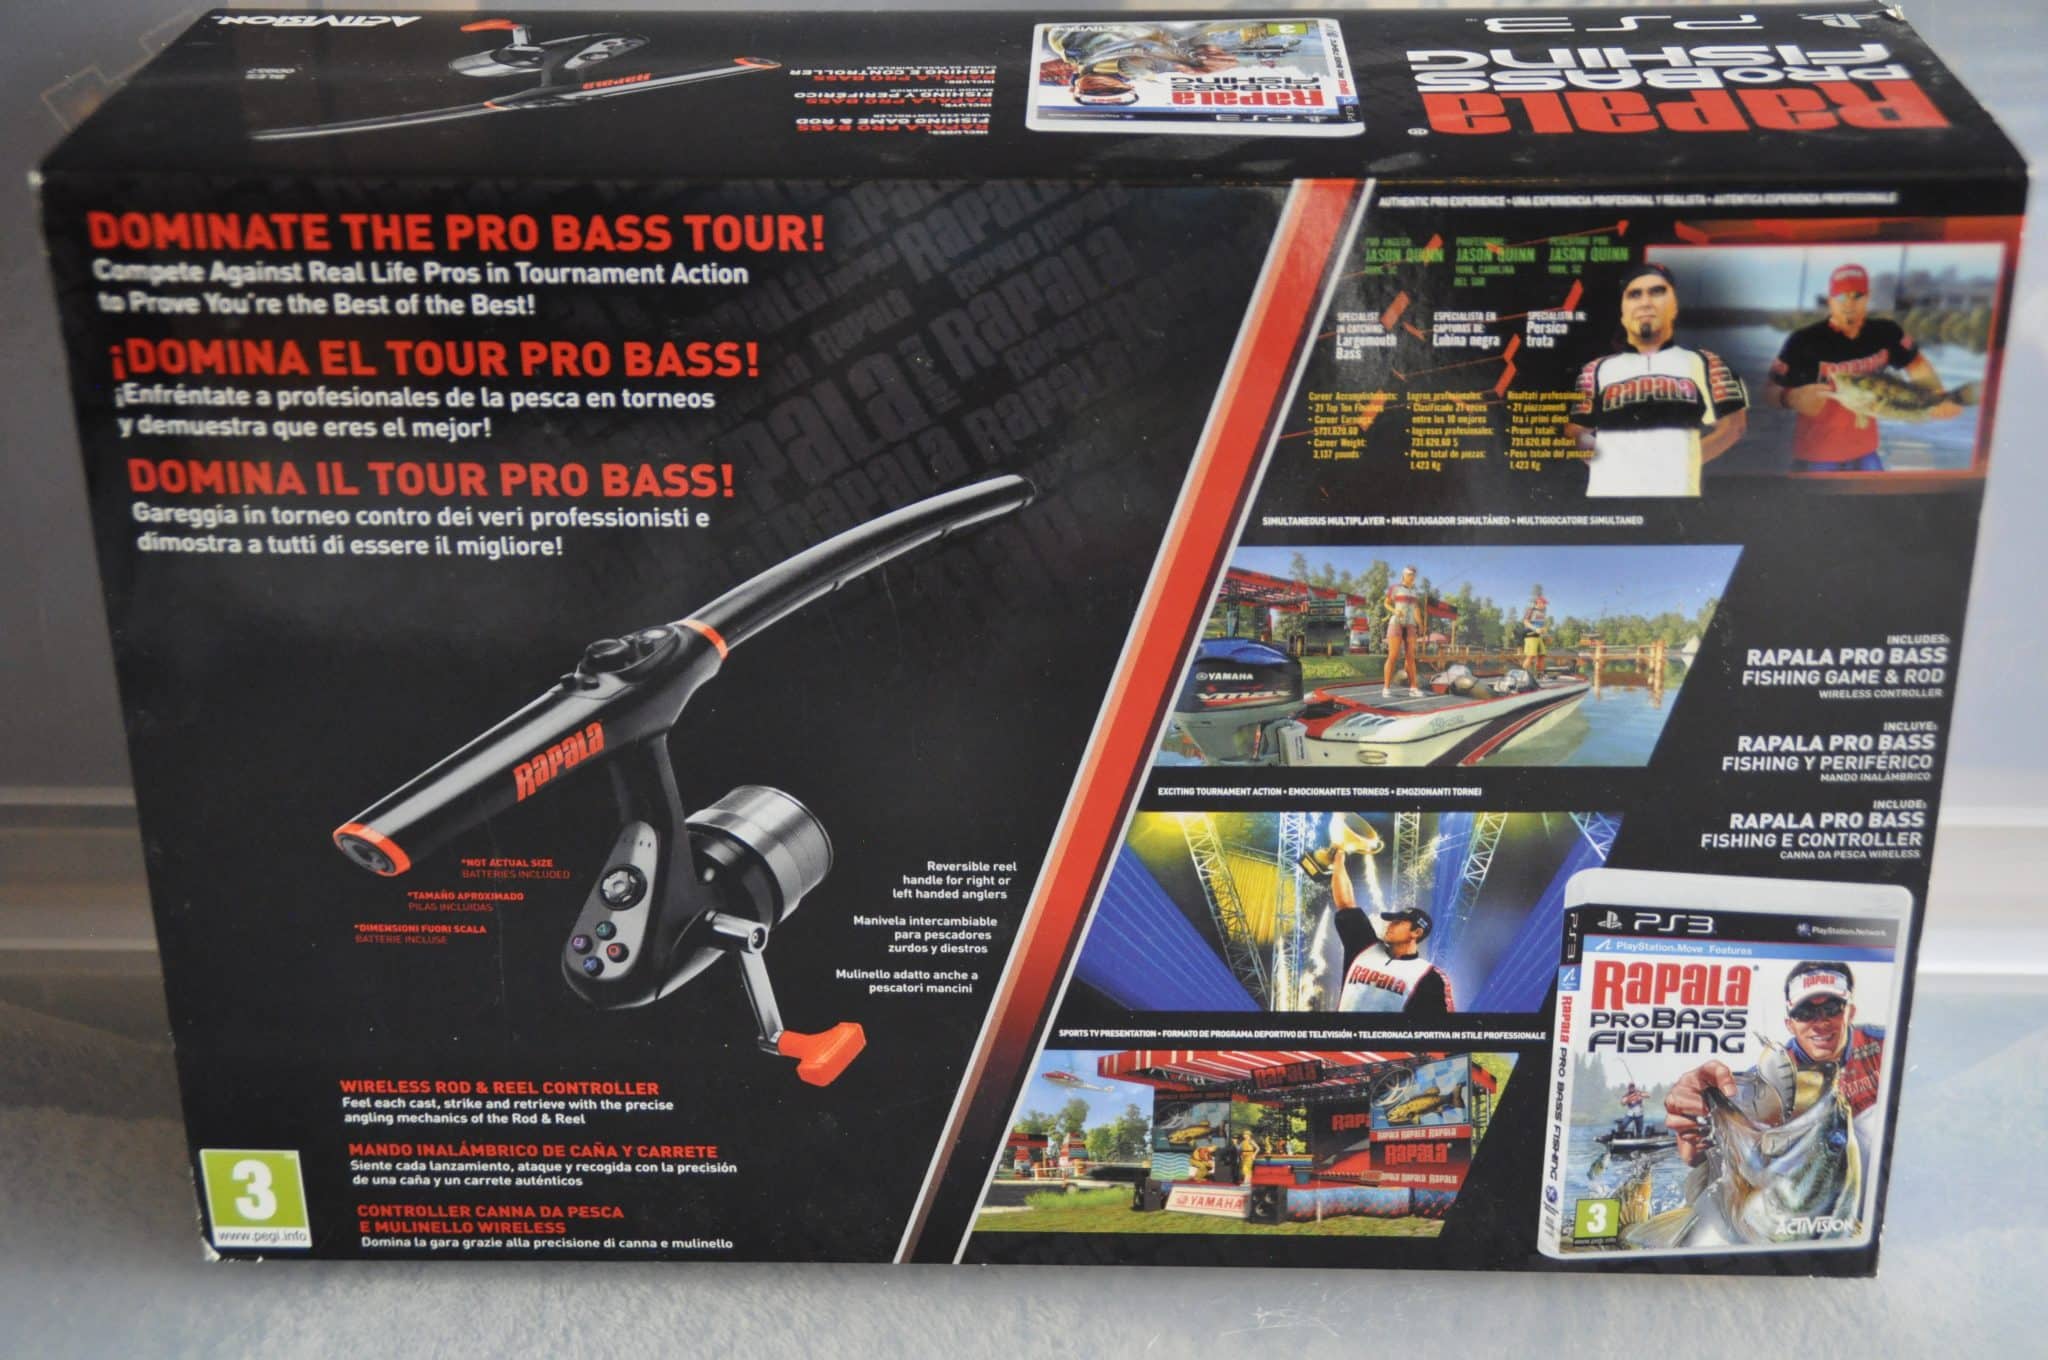 Accessory Bundles & Add Ons - PS3 - Rapala Pro Bass Fishing Game +